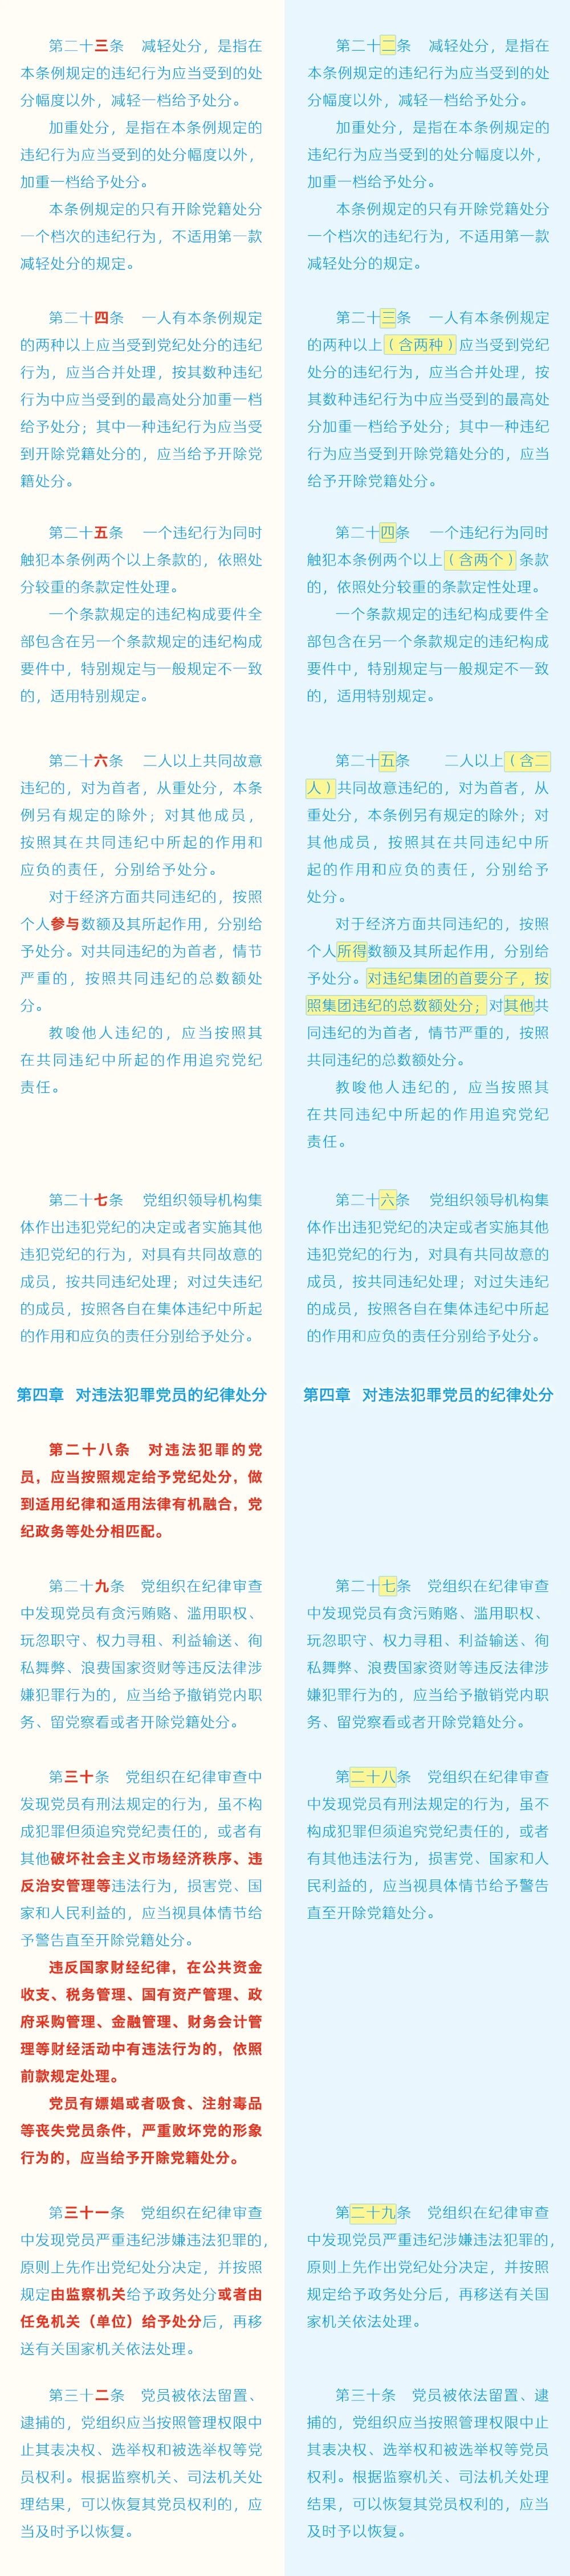 《中国共产党纪律处分条例》修订条文对照表4.jpg